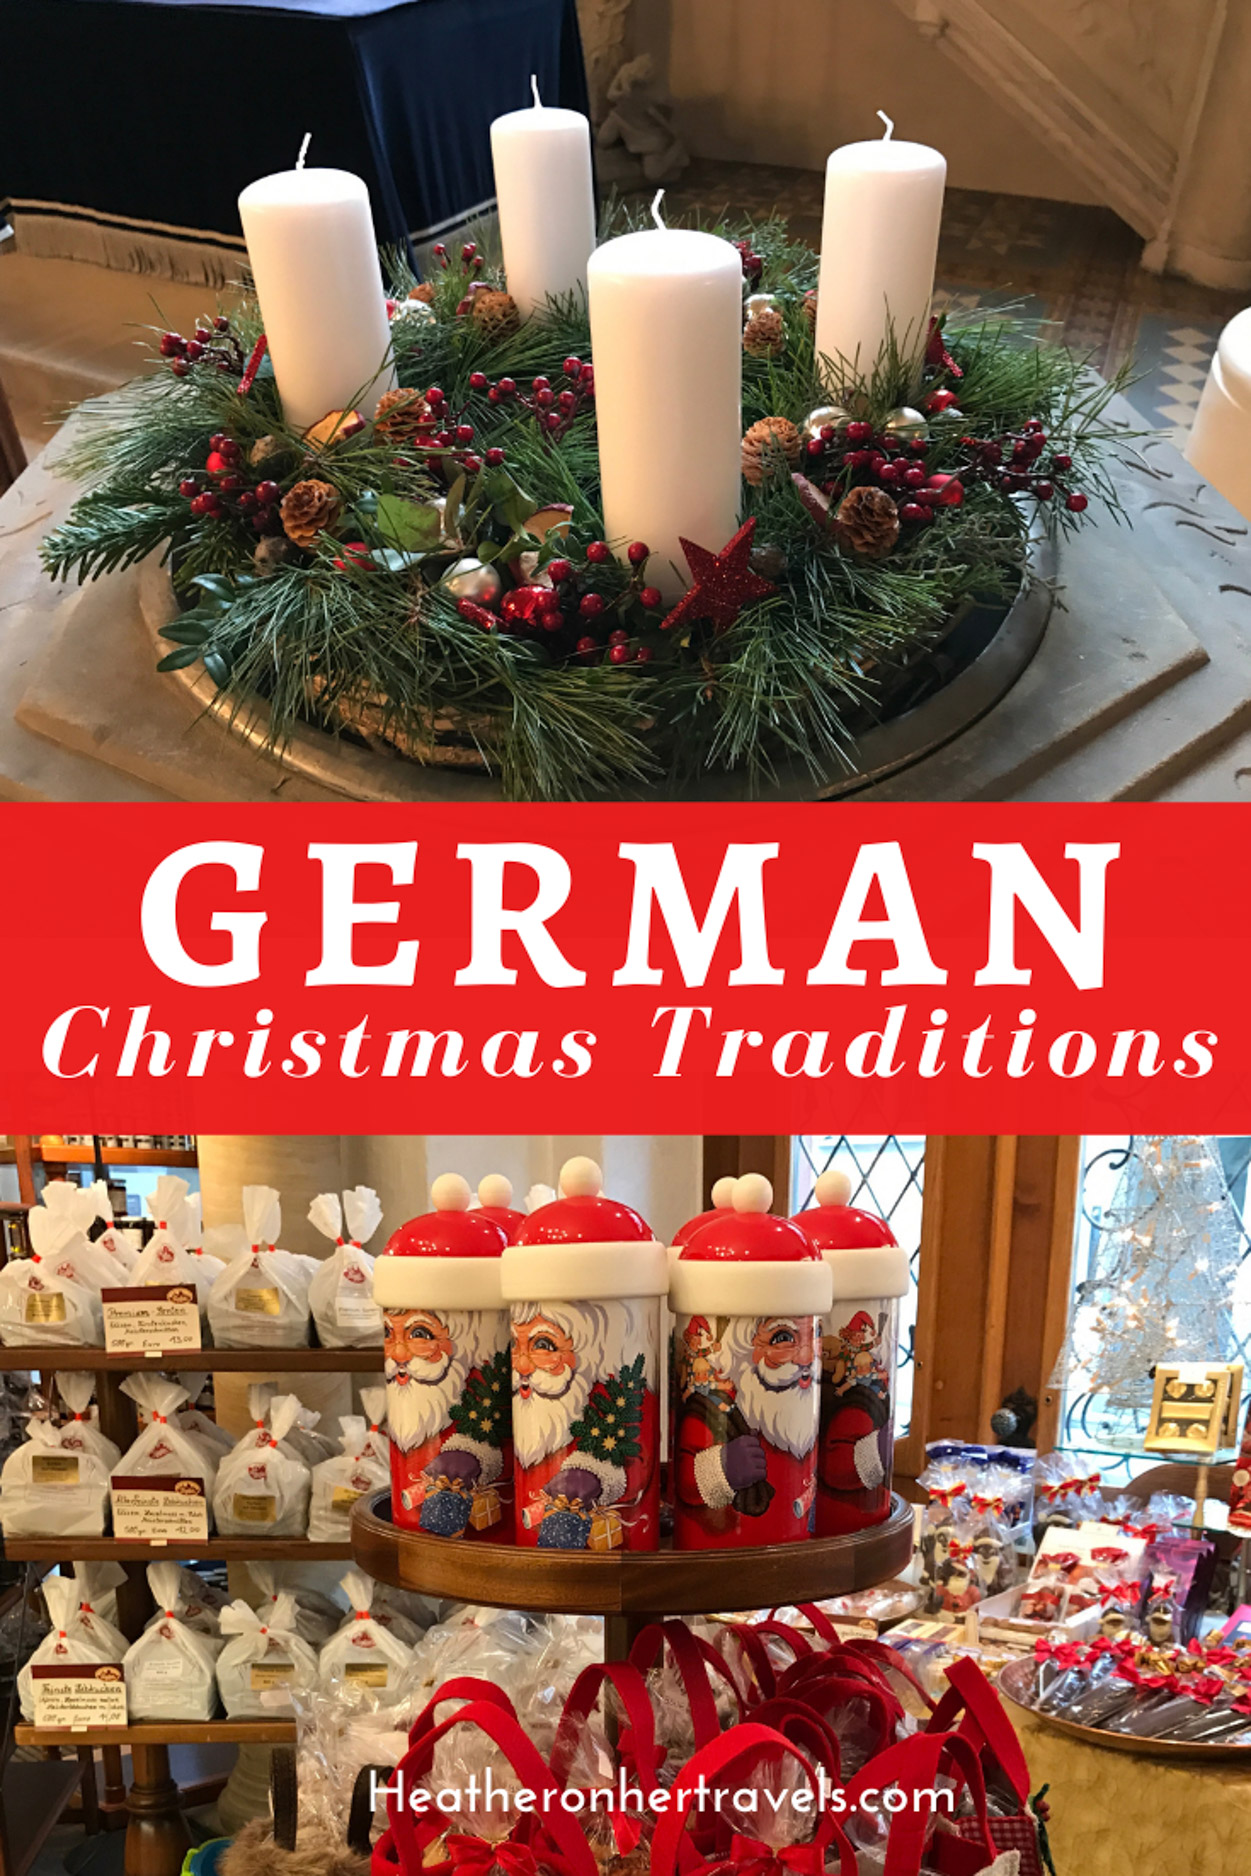 German Christmas traditions